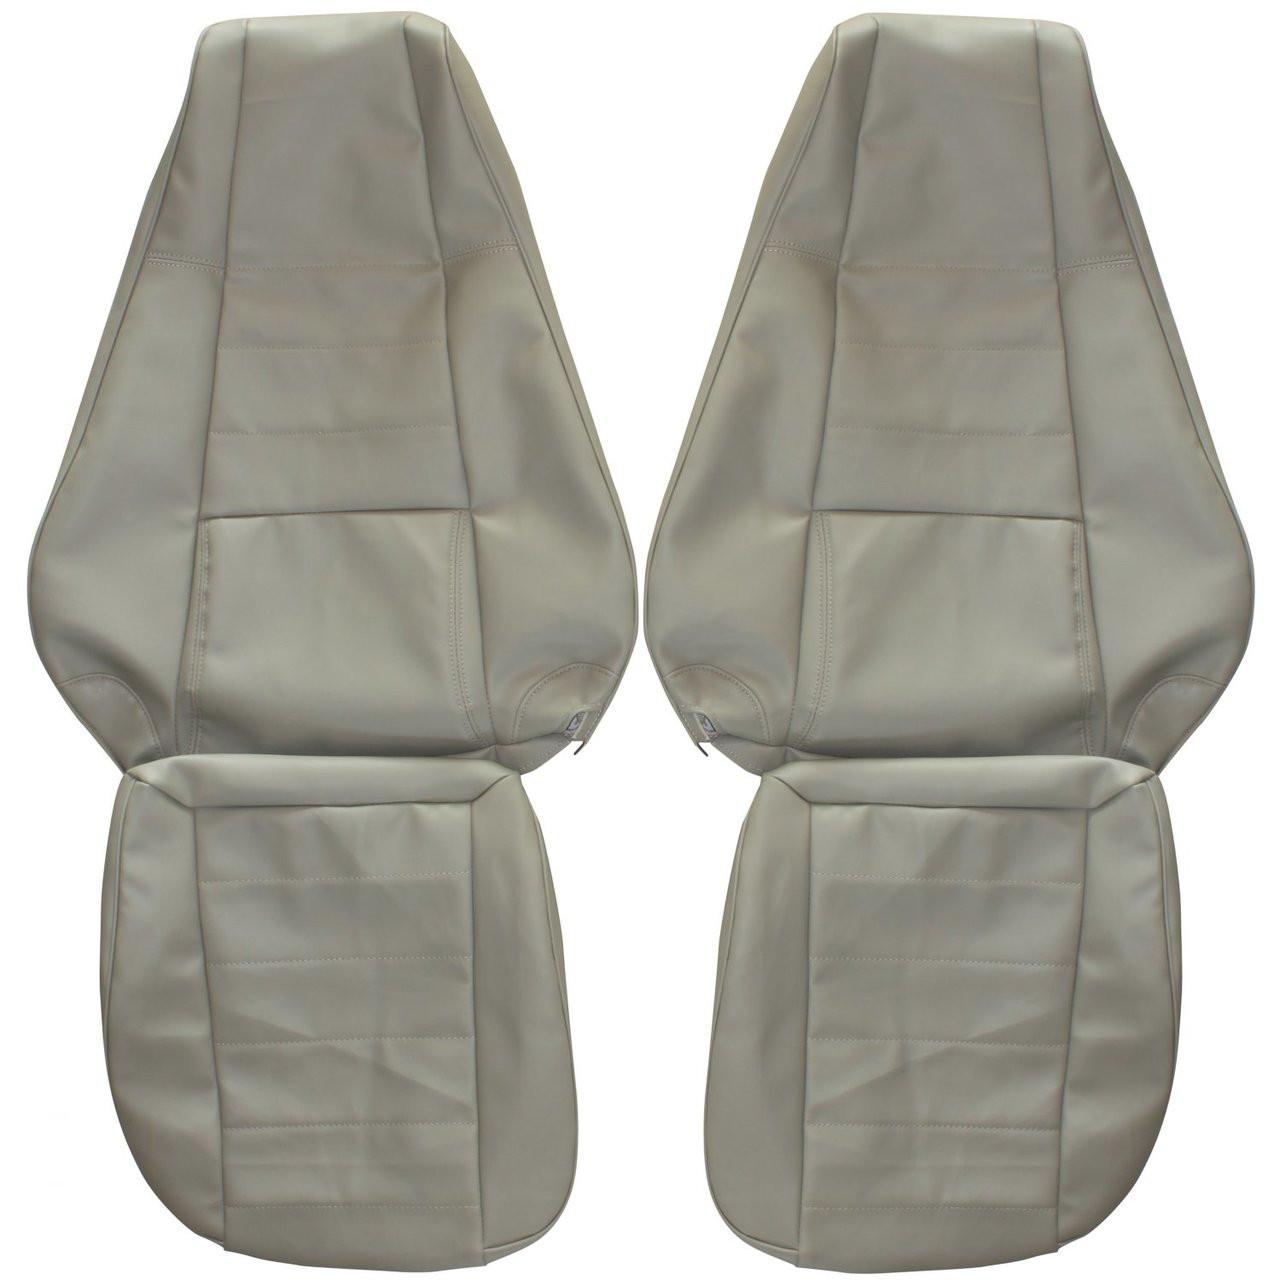 Wrangler™ Series Original Custom Fit Truck Seat Covers